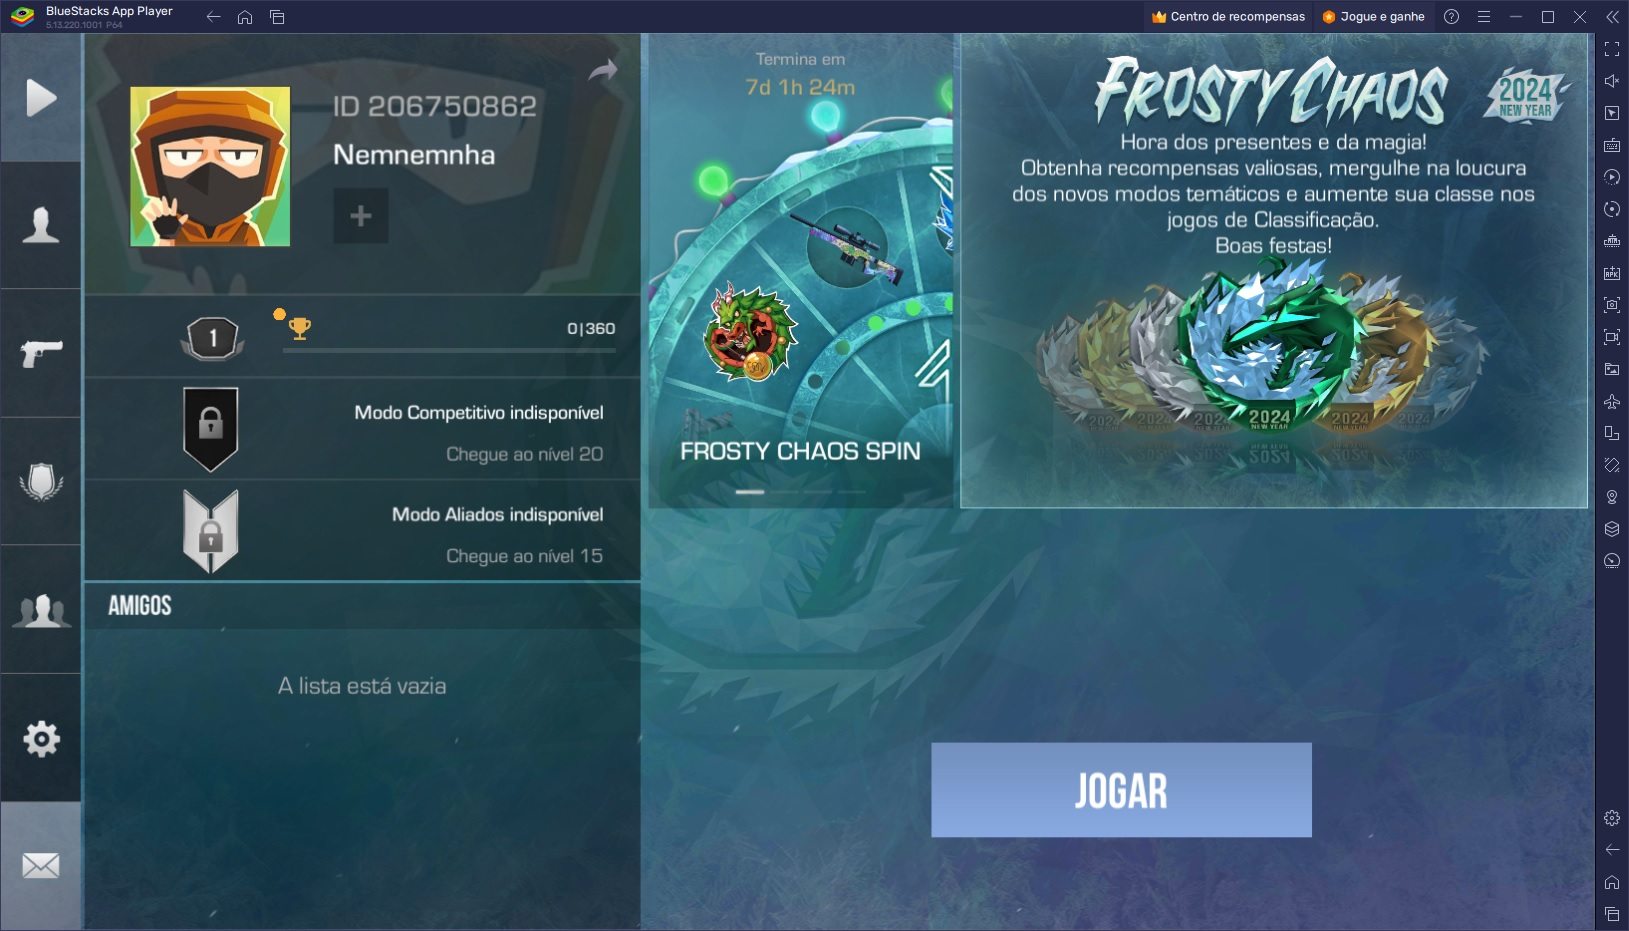 Explore a Atualização Frosty Chaos em Standoff 2 no PC com o BlueStacks